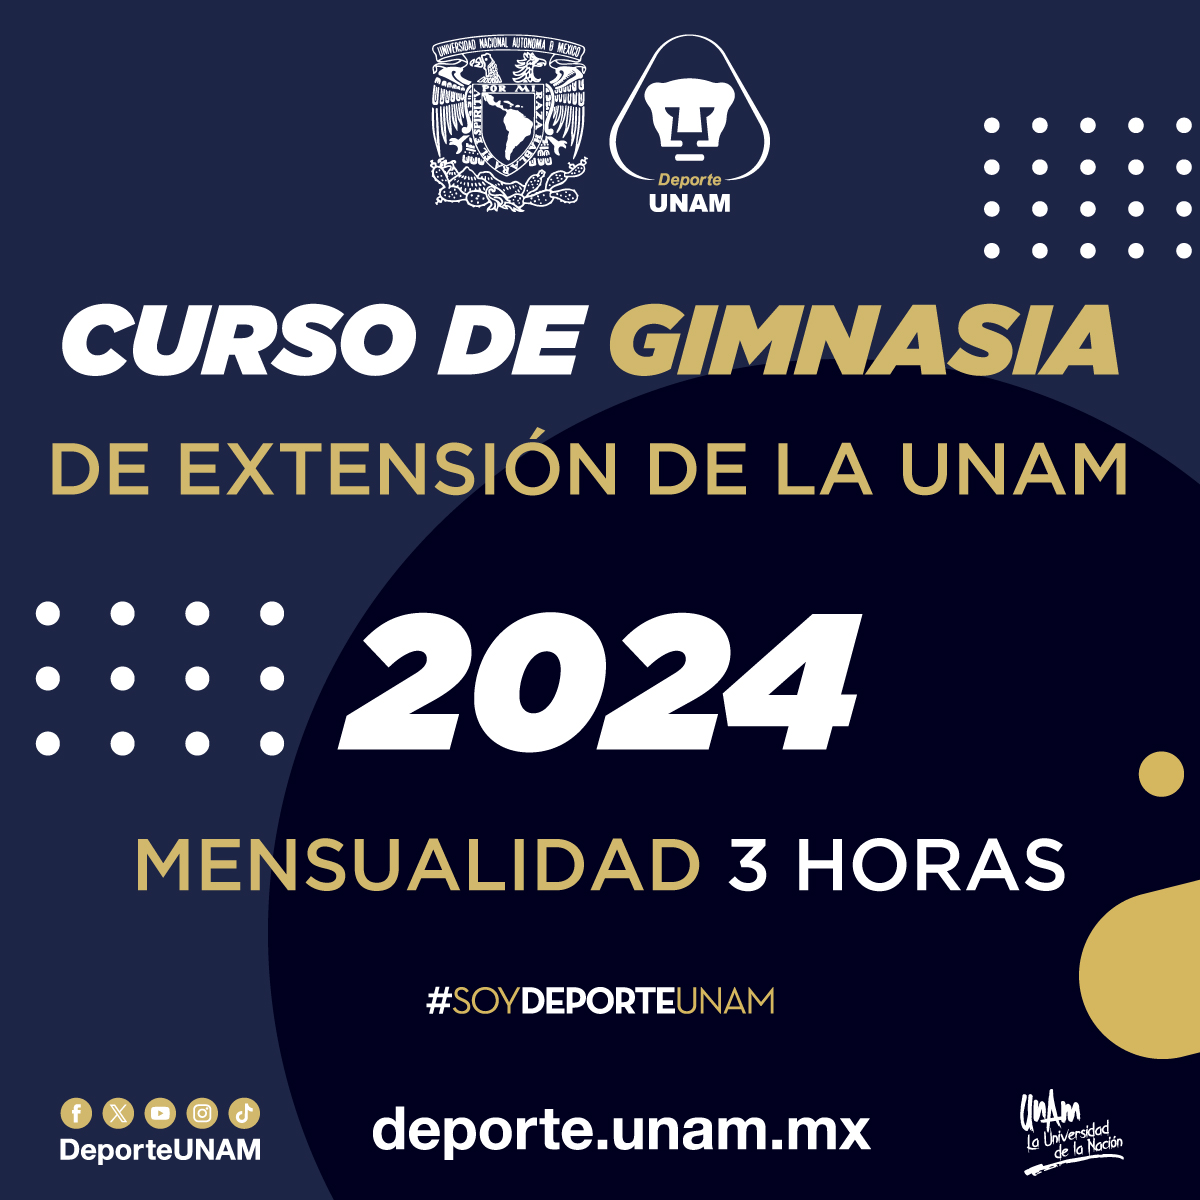 CURSO DE GIMNASIA DE EXTENSIÓN DE LA UNAM 2024 MENSUALIDAD 3 HORAS